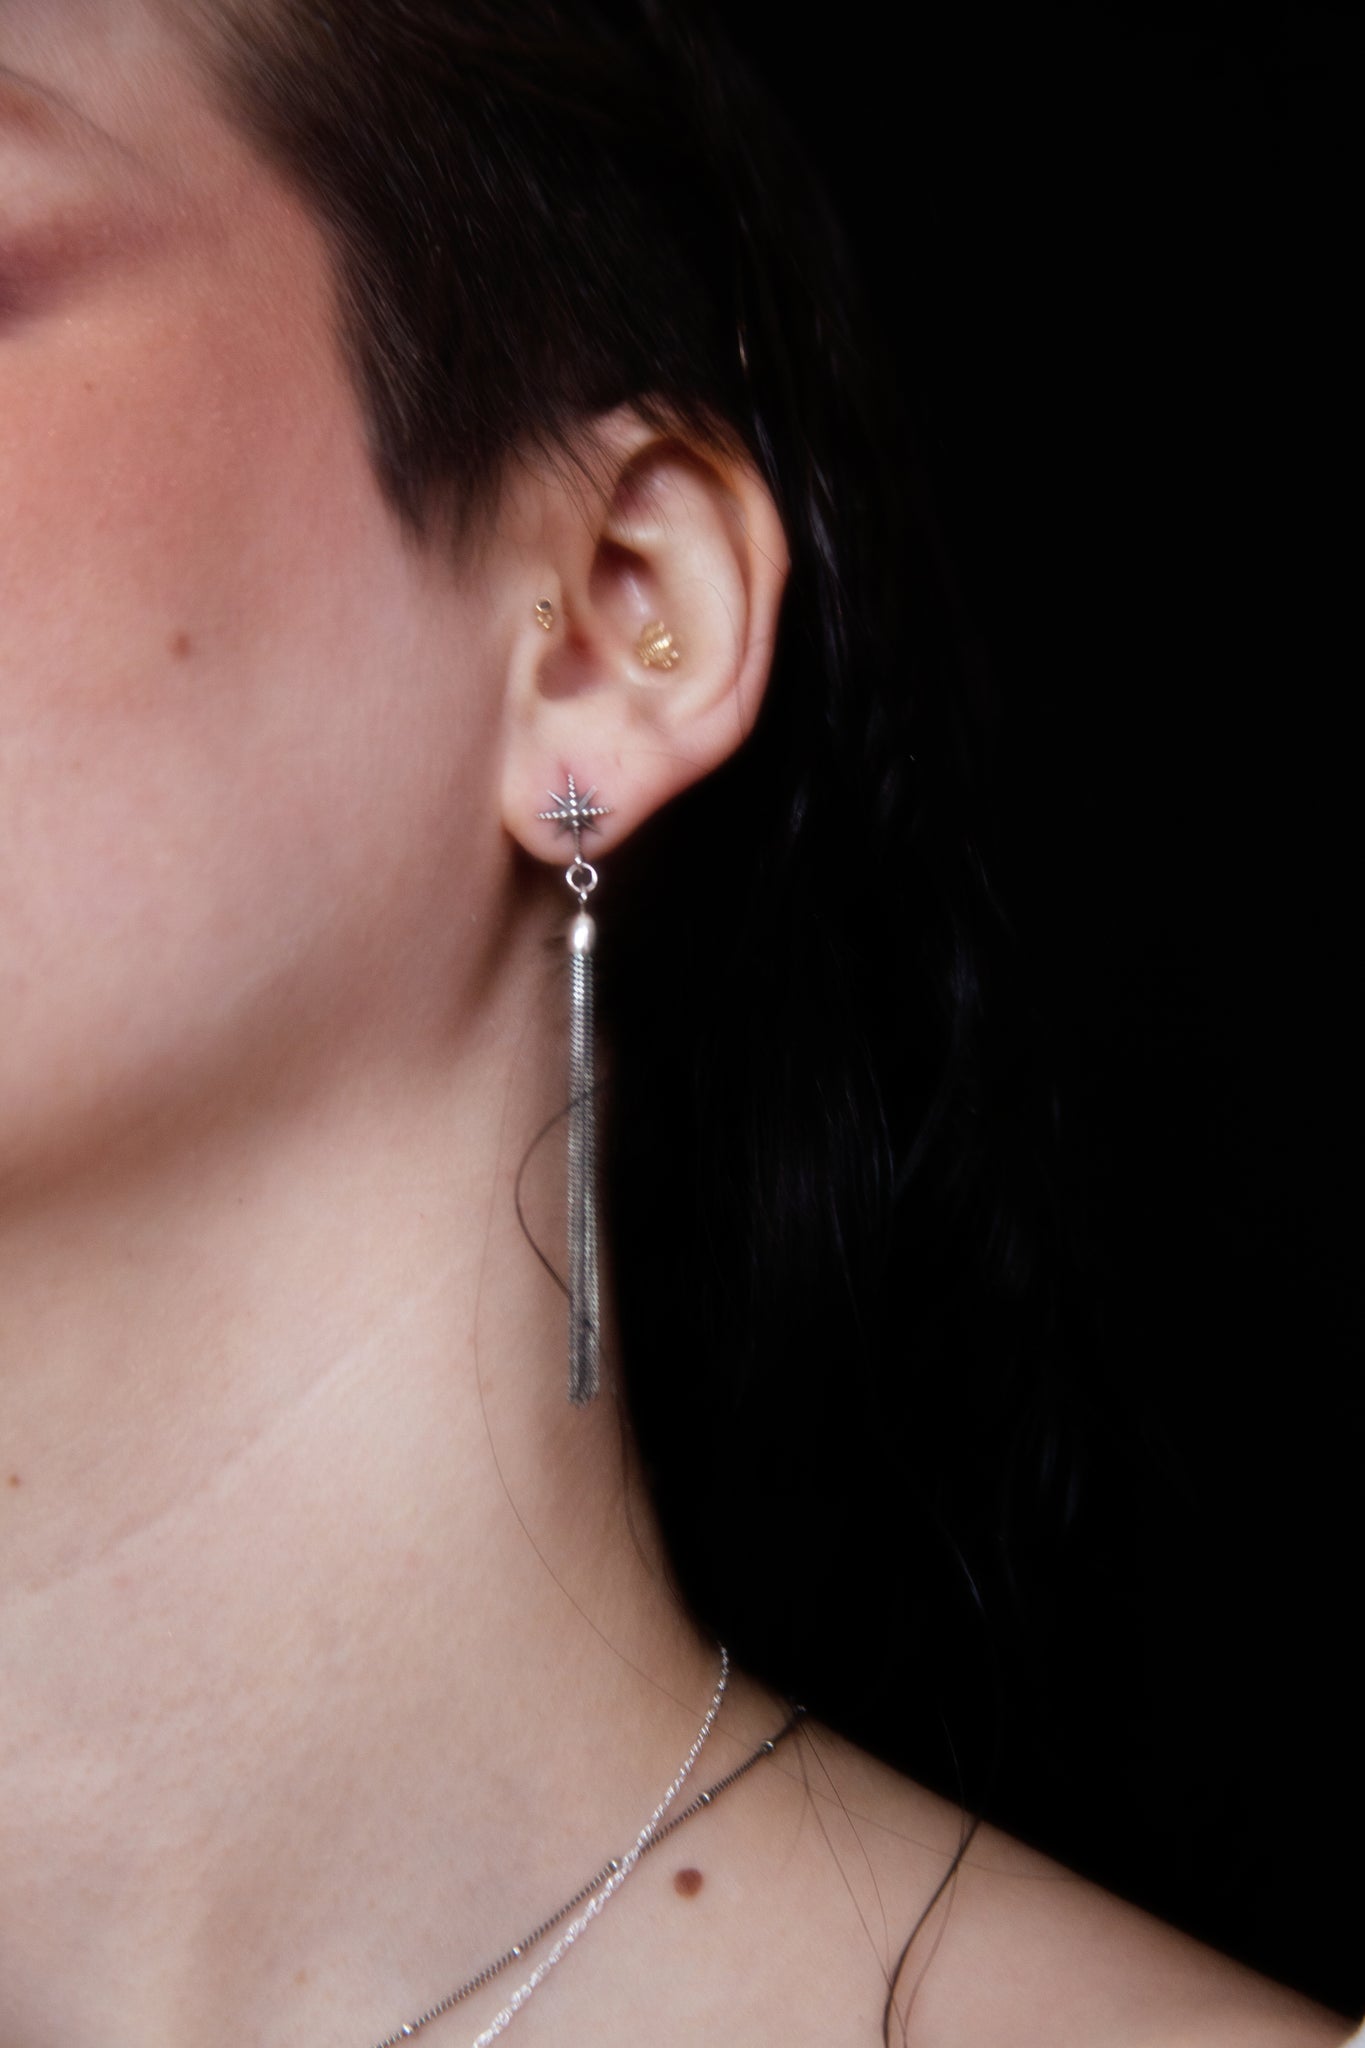 Stardust Earrings in sterling silver